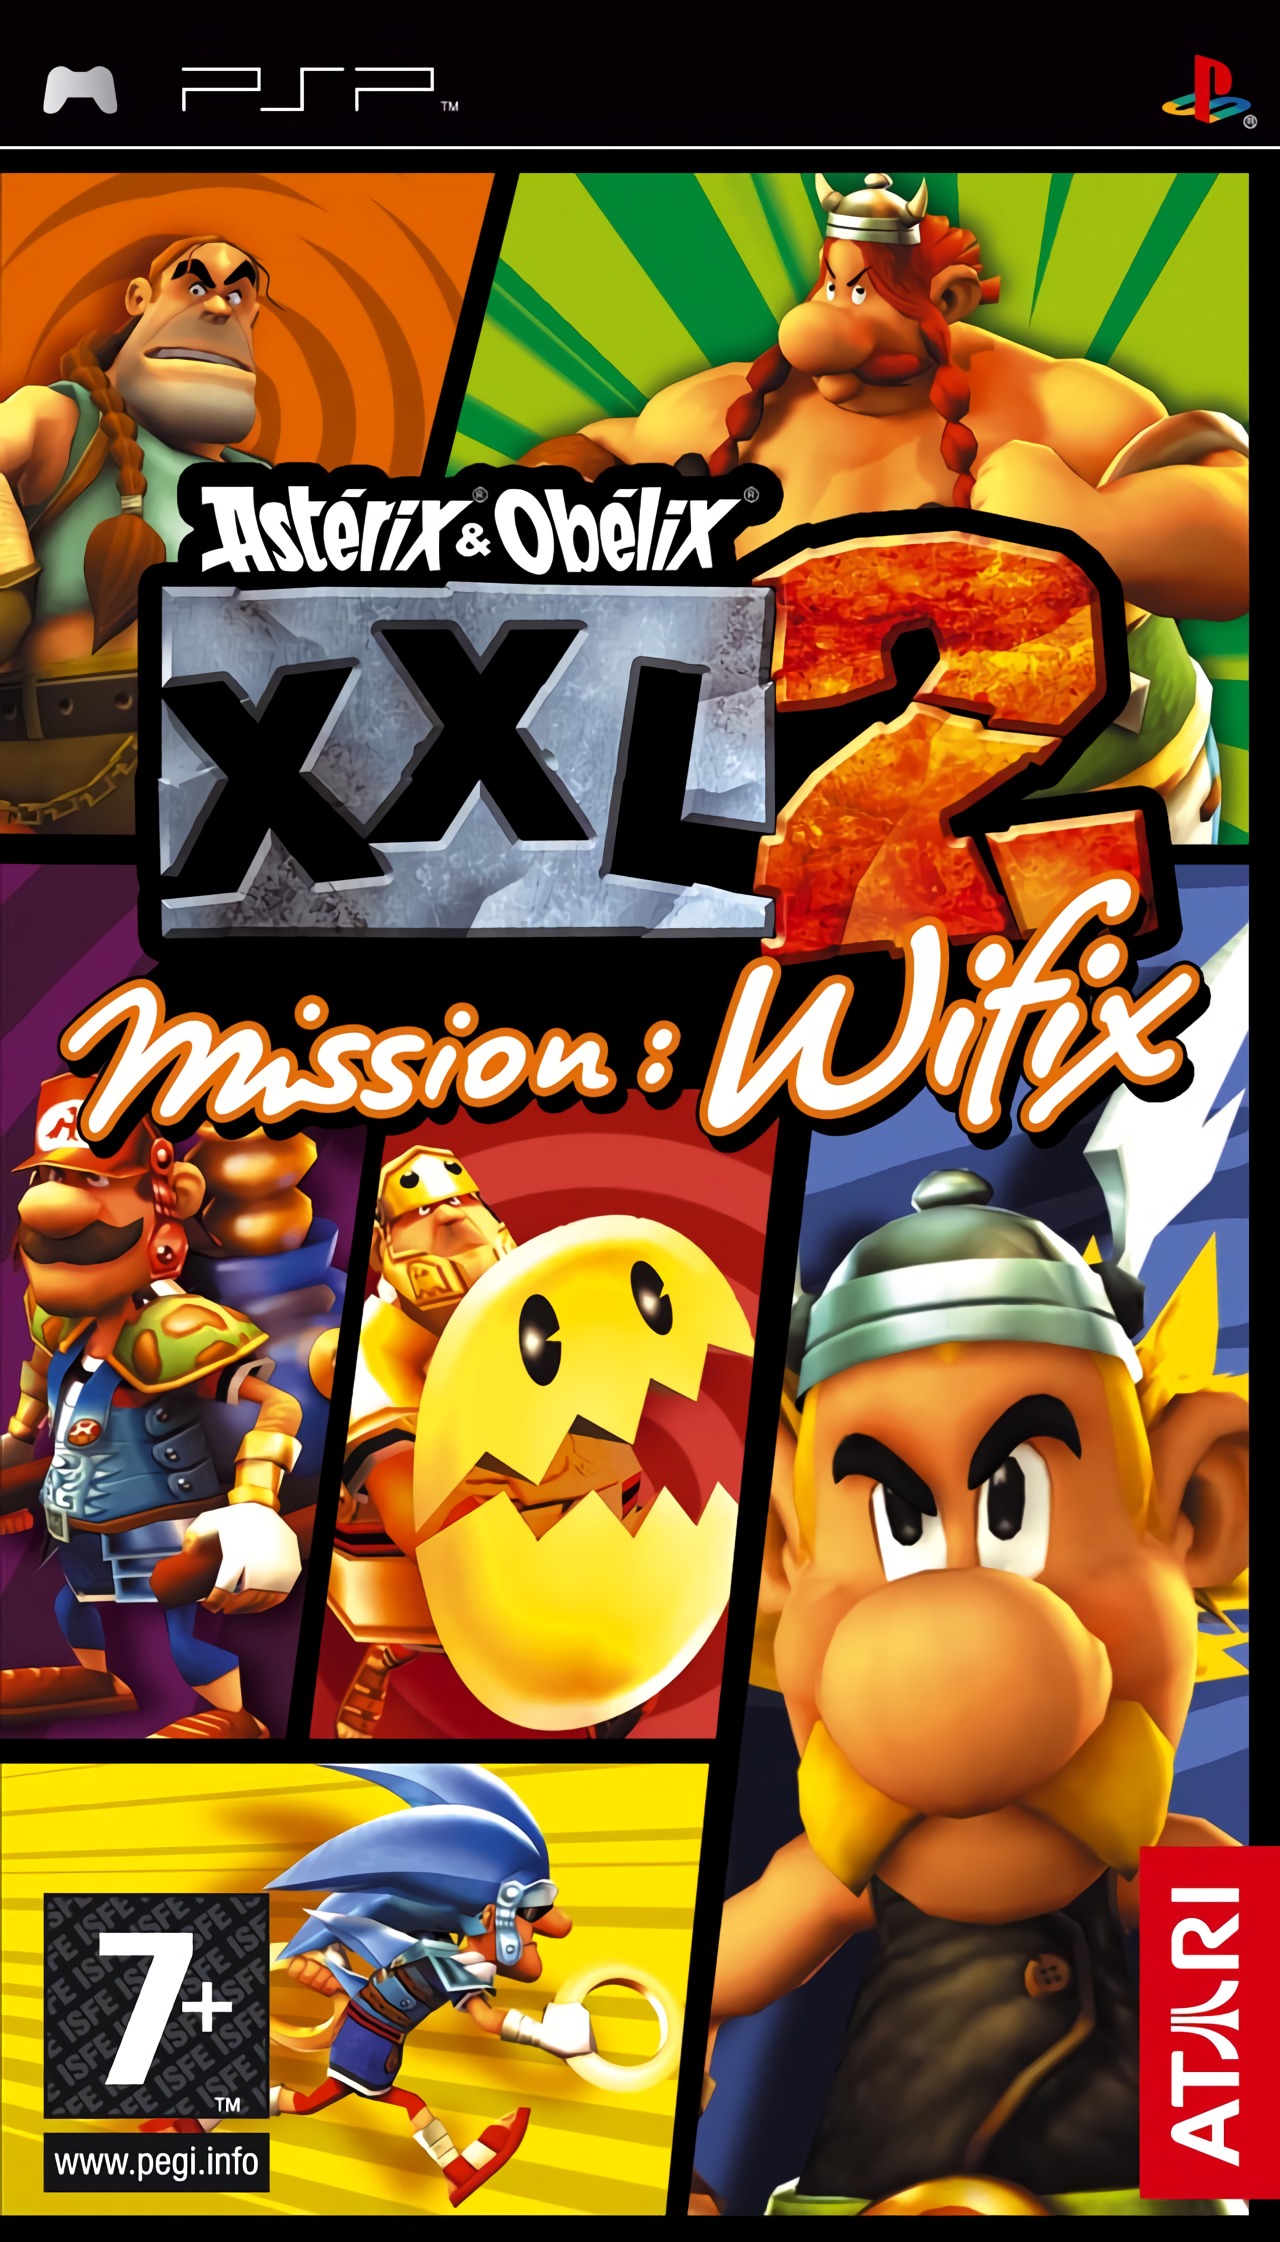 Astérix & Obélix XXL 2: Mission - Wifix